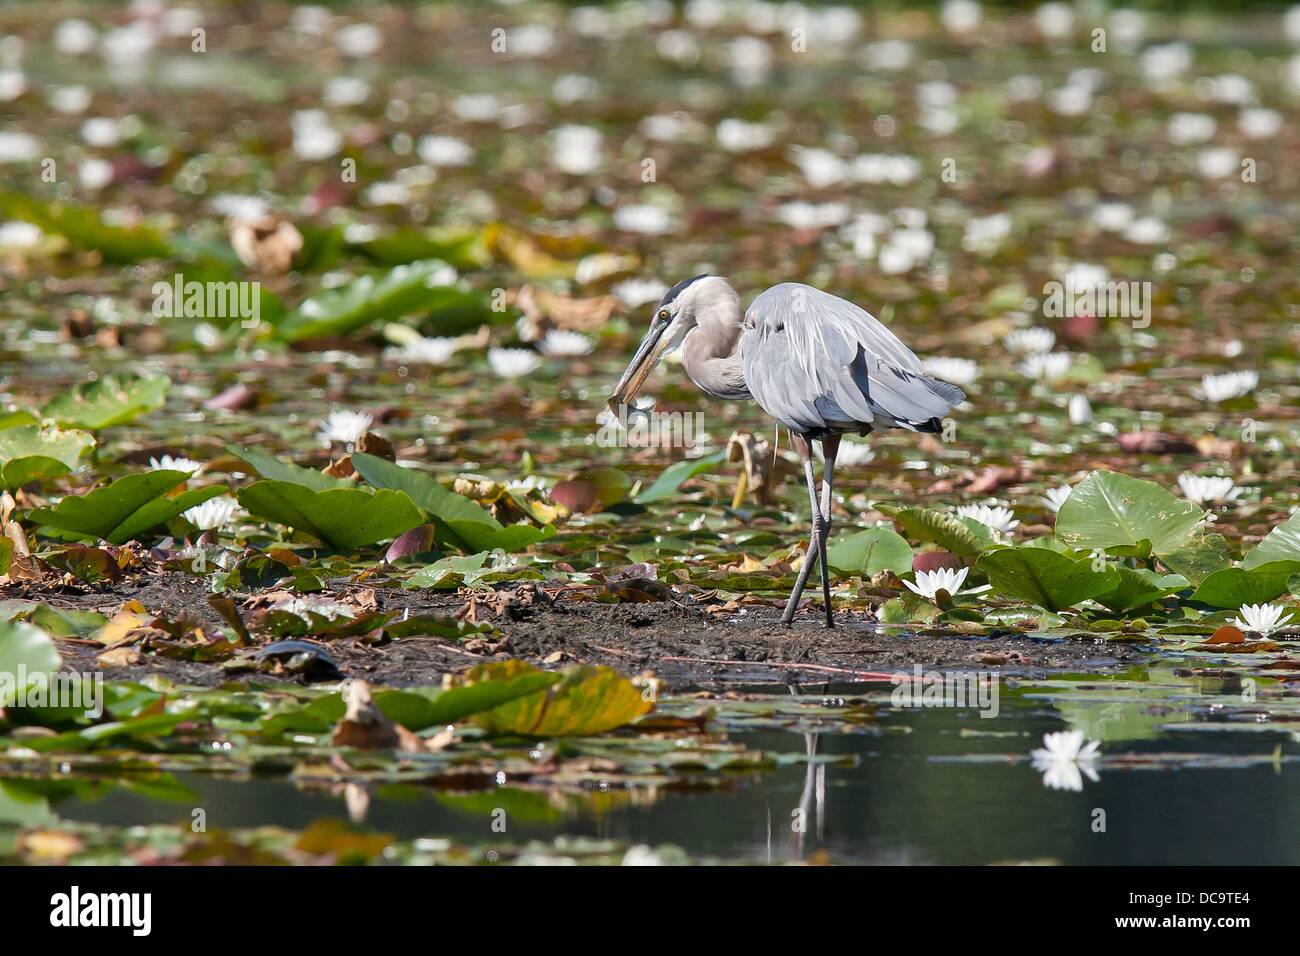 Heron stands in wetland. Stock Photo